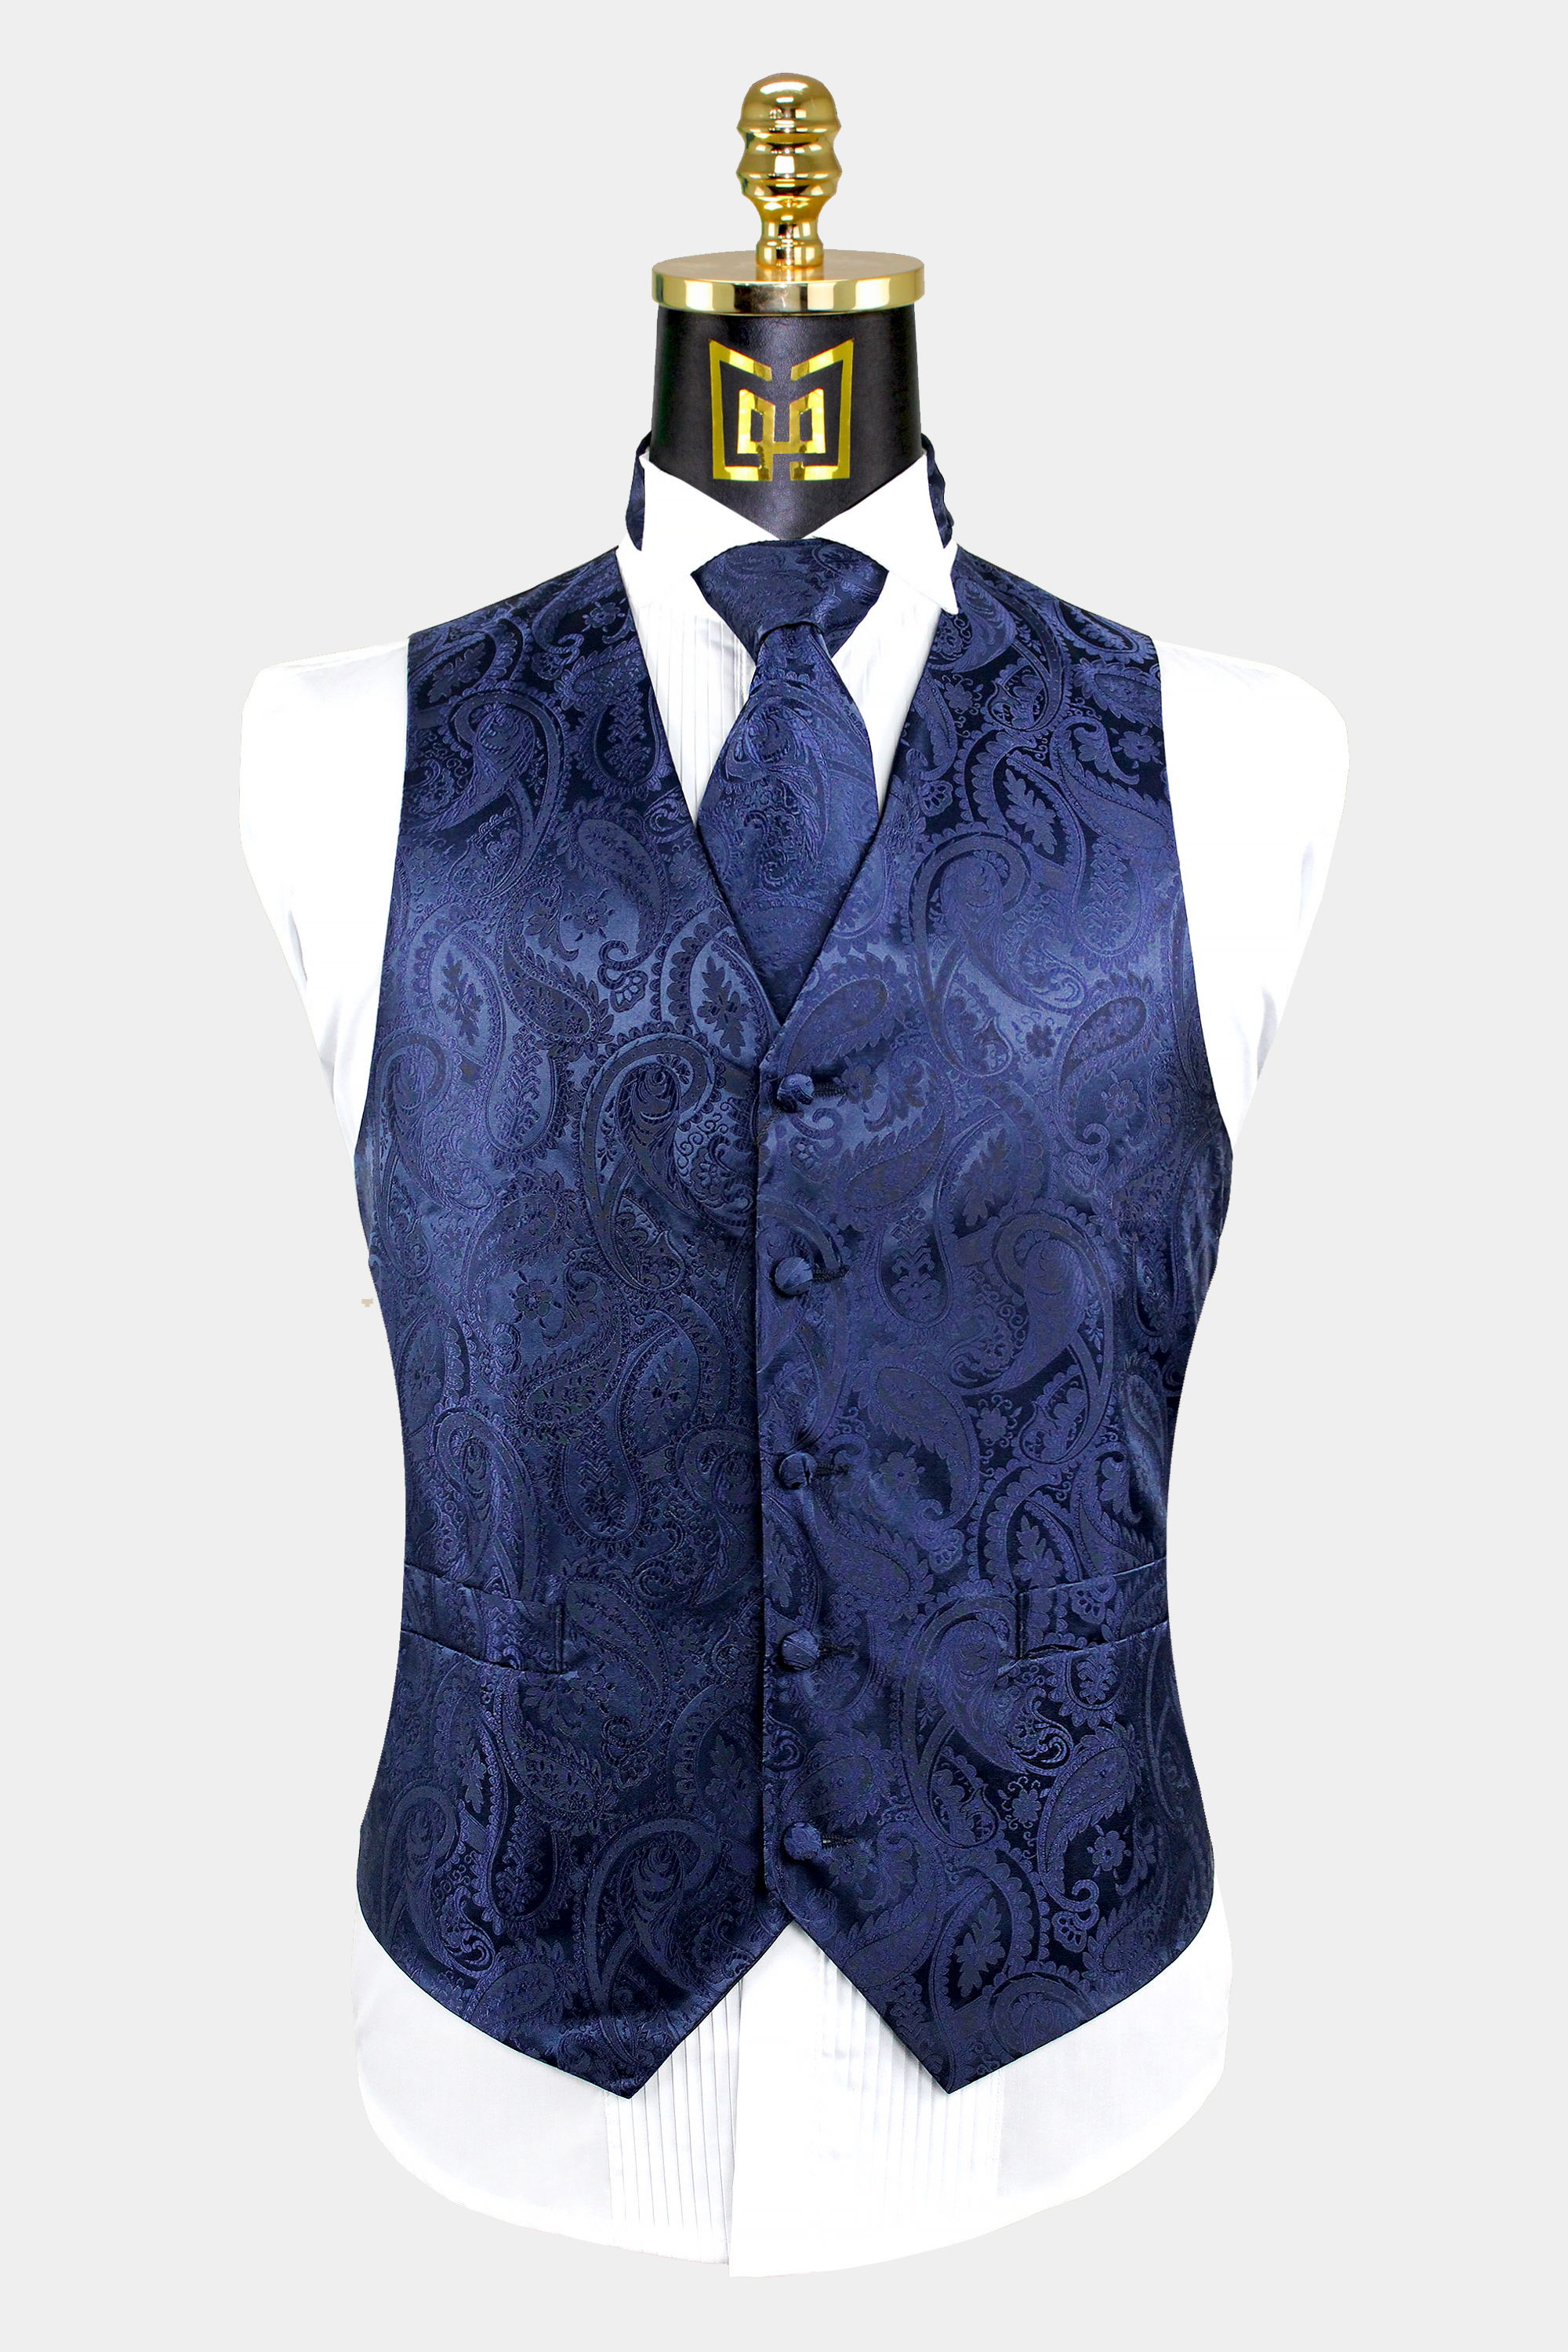 Mens Navy Blue Paisley Vest And Tie Set Groom Wedding Tuxedo Vest From Gentlemansguru.com  1 